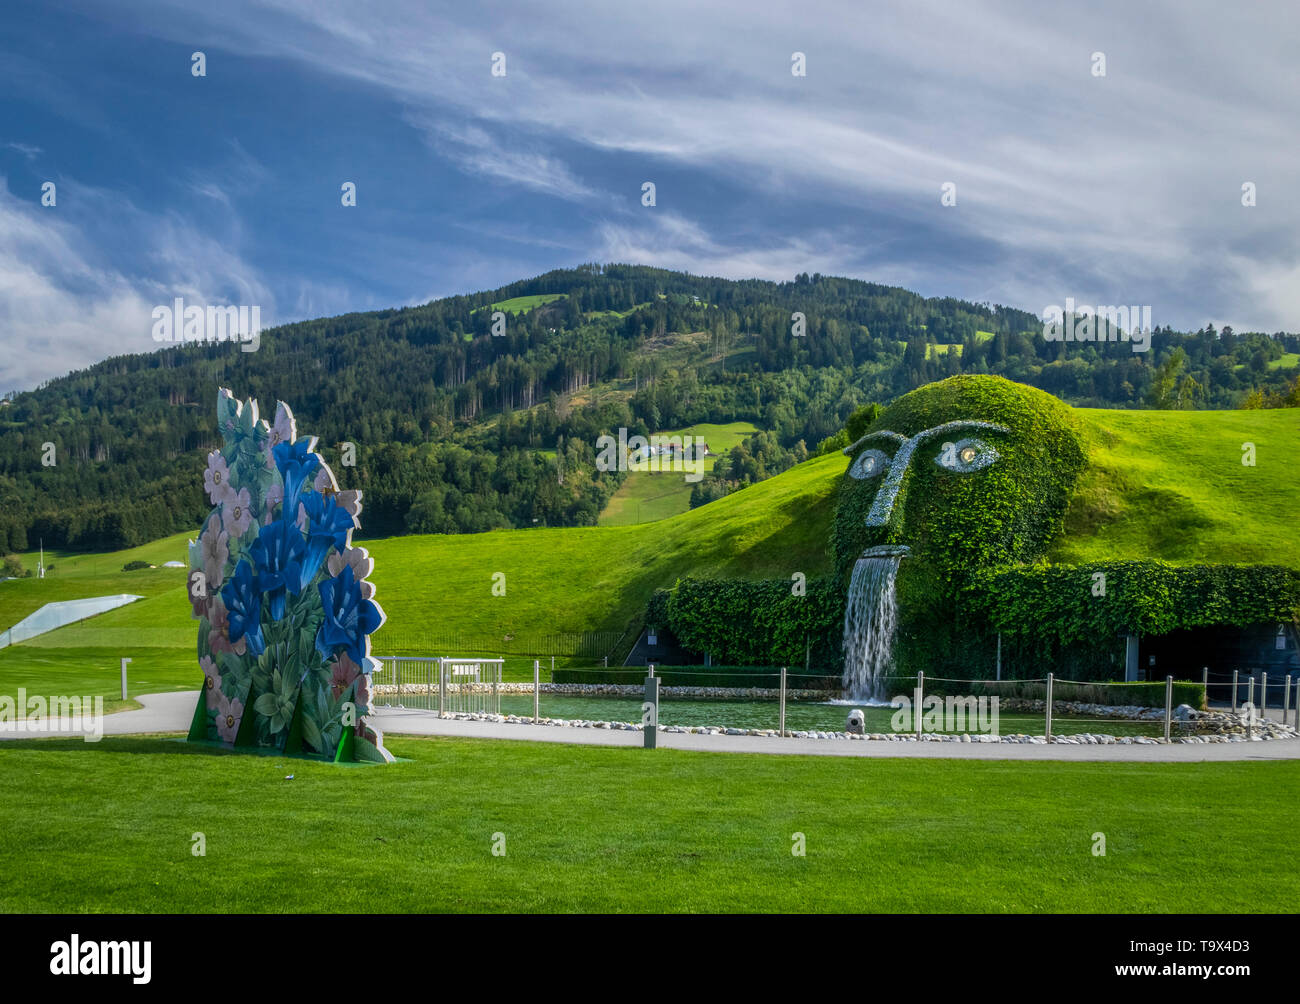 Swarovski crystal worlds ""The giant"" in Wattens, Tyrol, Austria, Europe",  Swarovski Kristallwelten "Der Riese" in Wattens, Tirol, Österreich, Europ  Stock Photo - Alamy